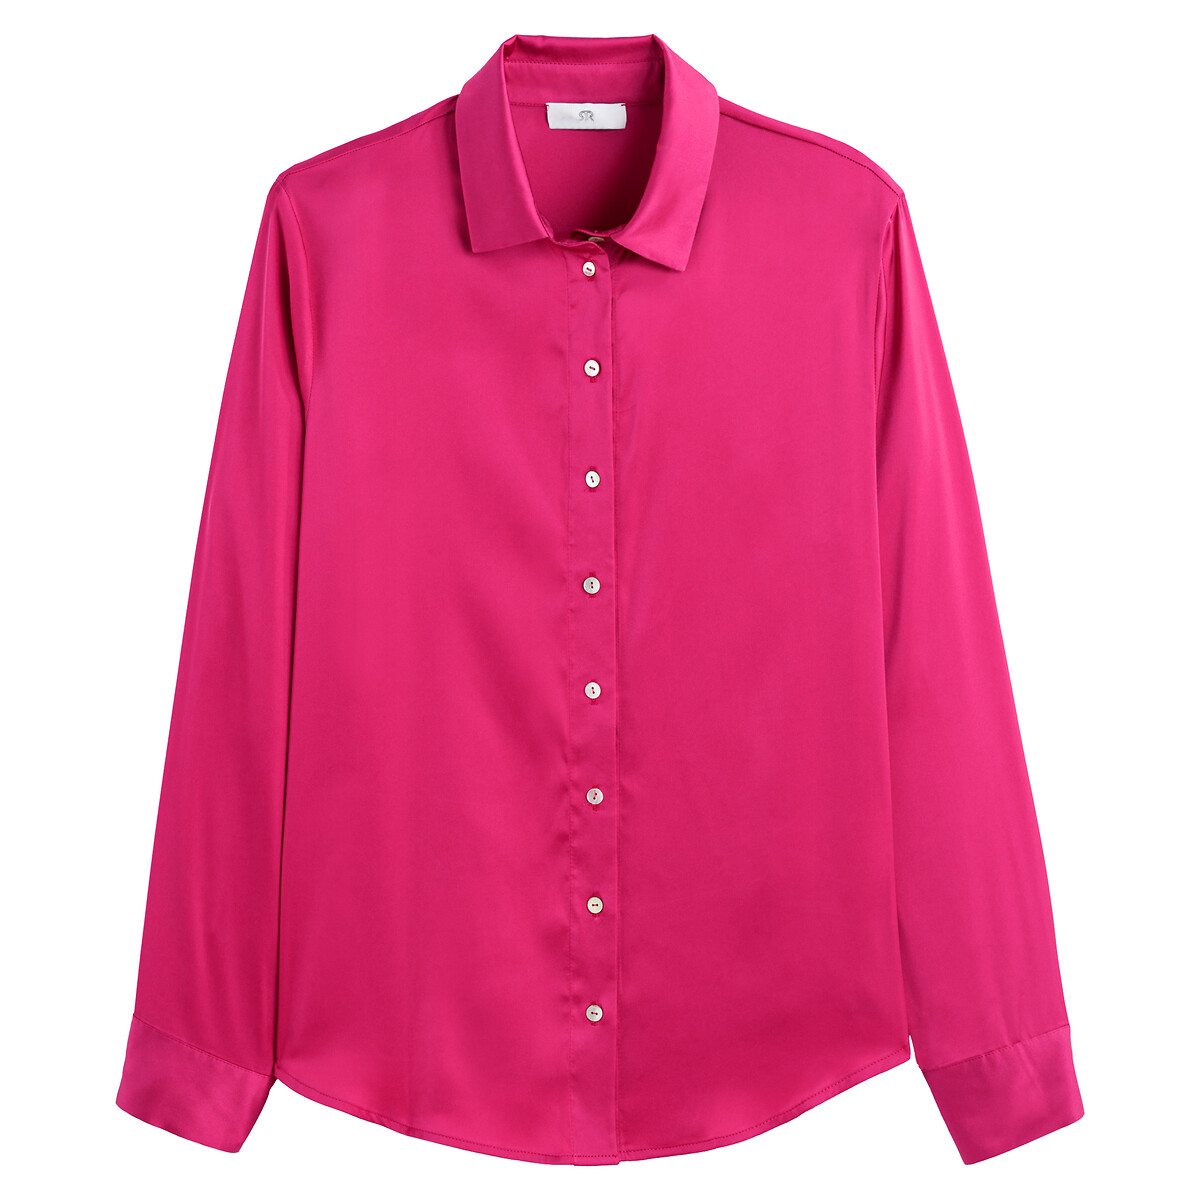 Рубашка С длинными рукавами атласная 48 (FR) - 54 (RUS) розовый LaRedoute, размер 48 (FR) - 54 (RUS) Рубашка С длинными рукавами атласная 48 (FR) - 54 (RUS) розовый - фото 5